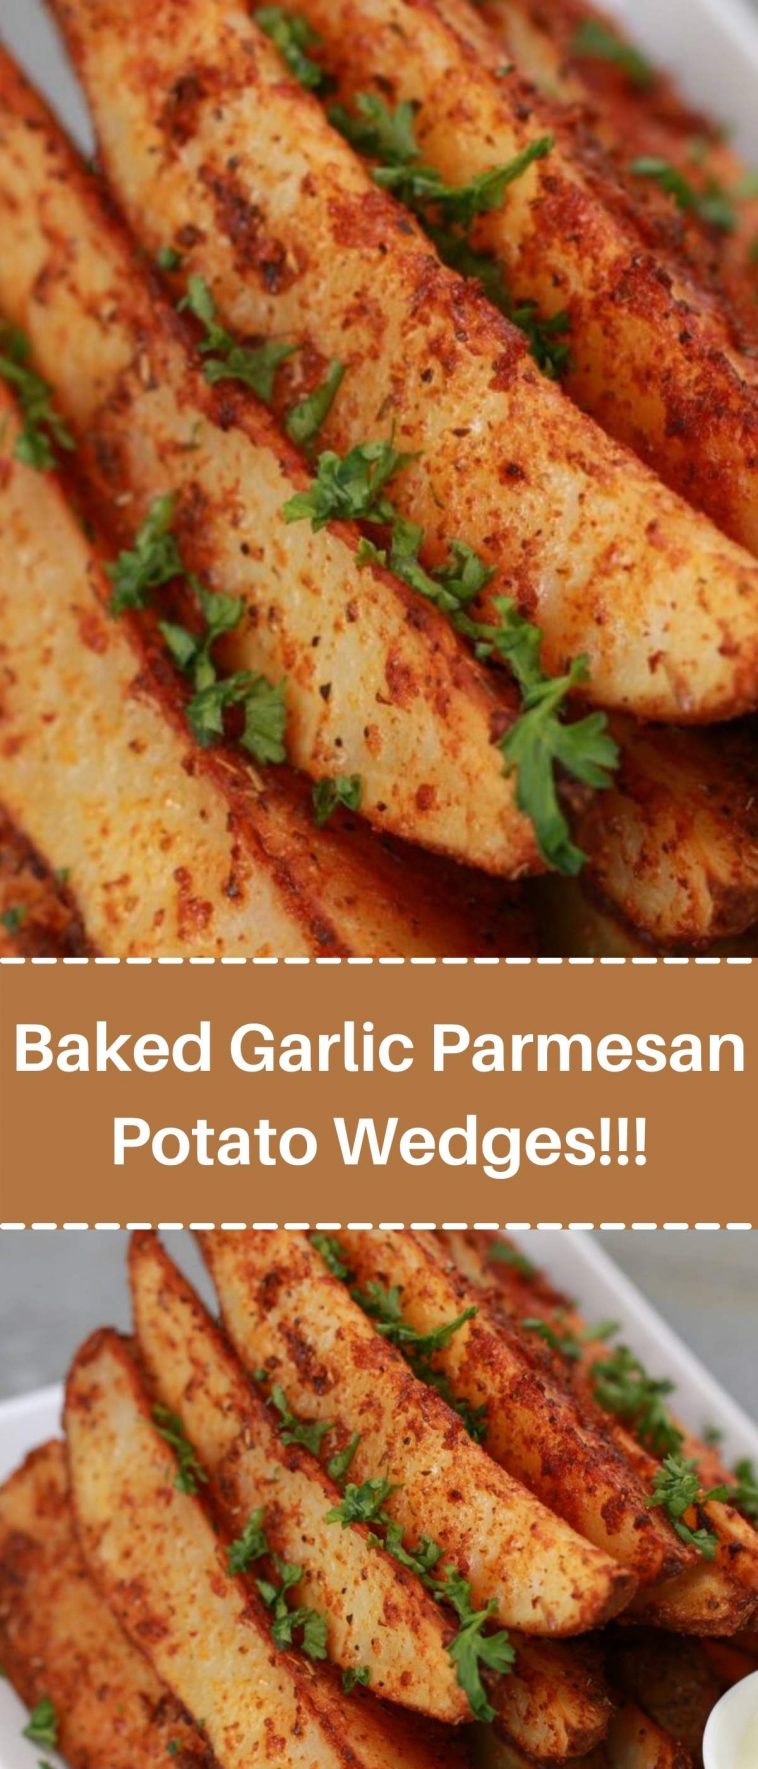 Baked Garlic Parmesan Potato Wedges!!!